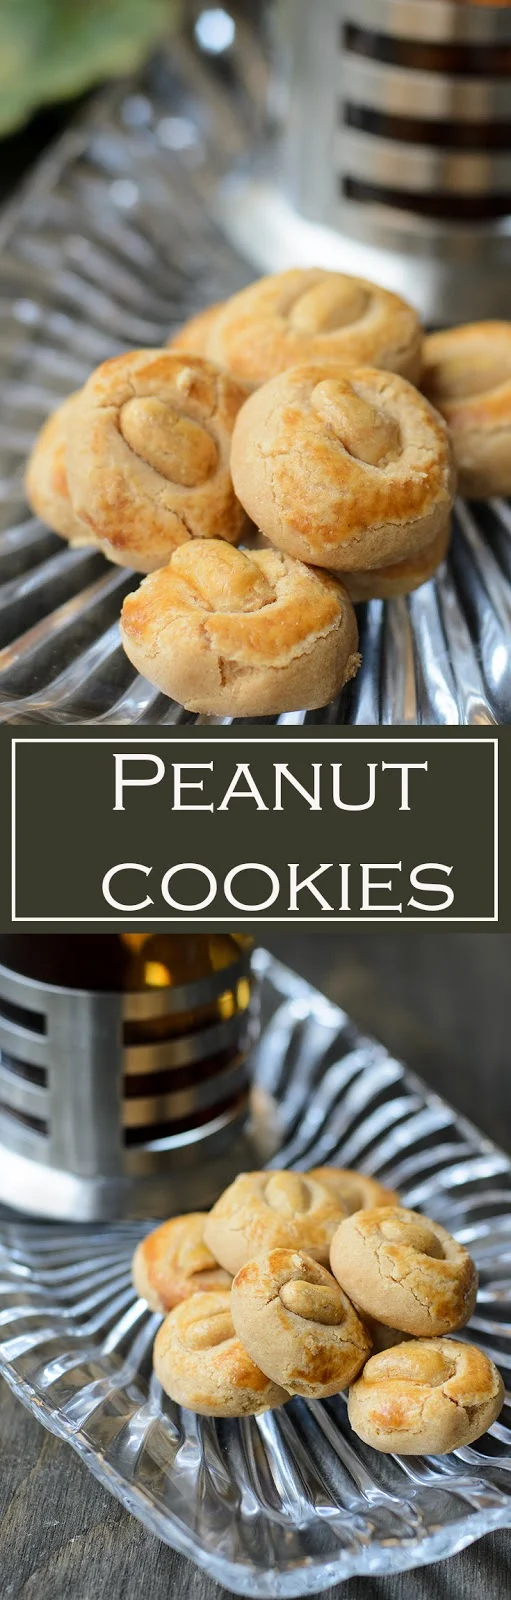 Easy to bake Peanut cookies